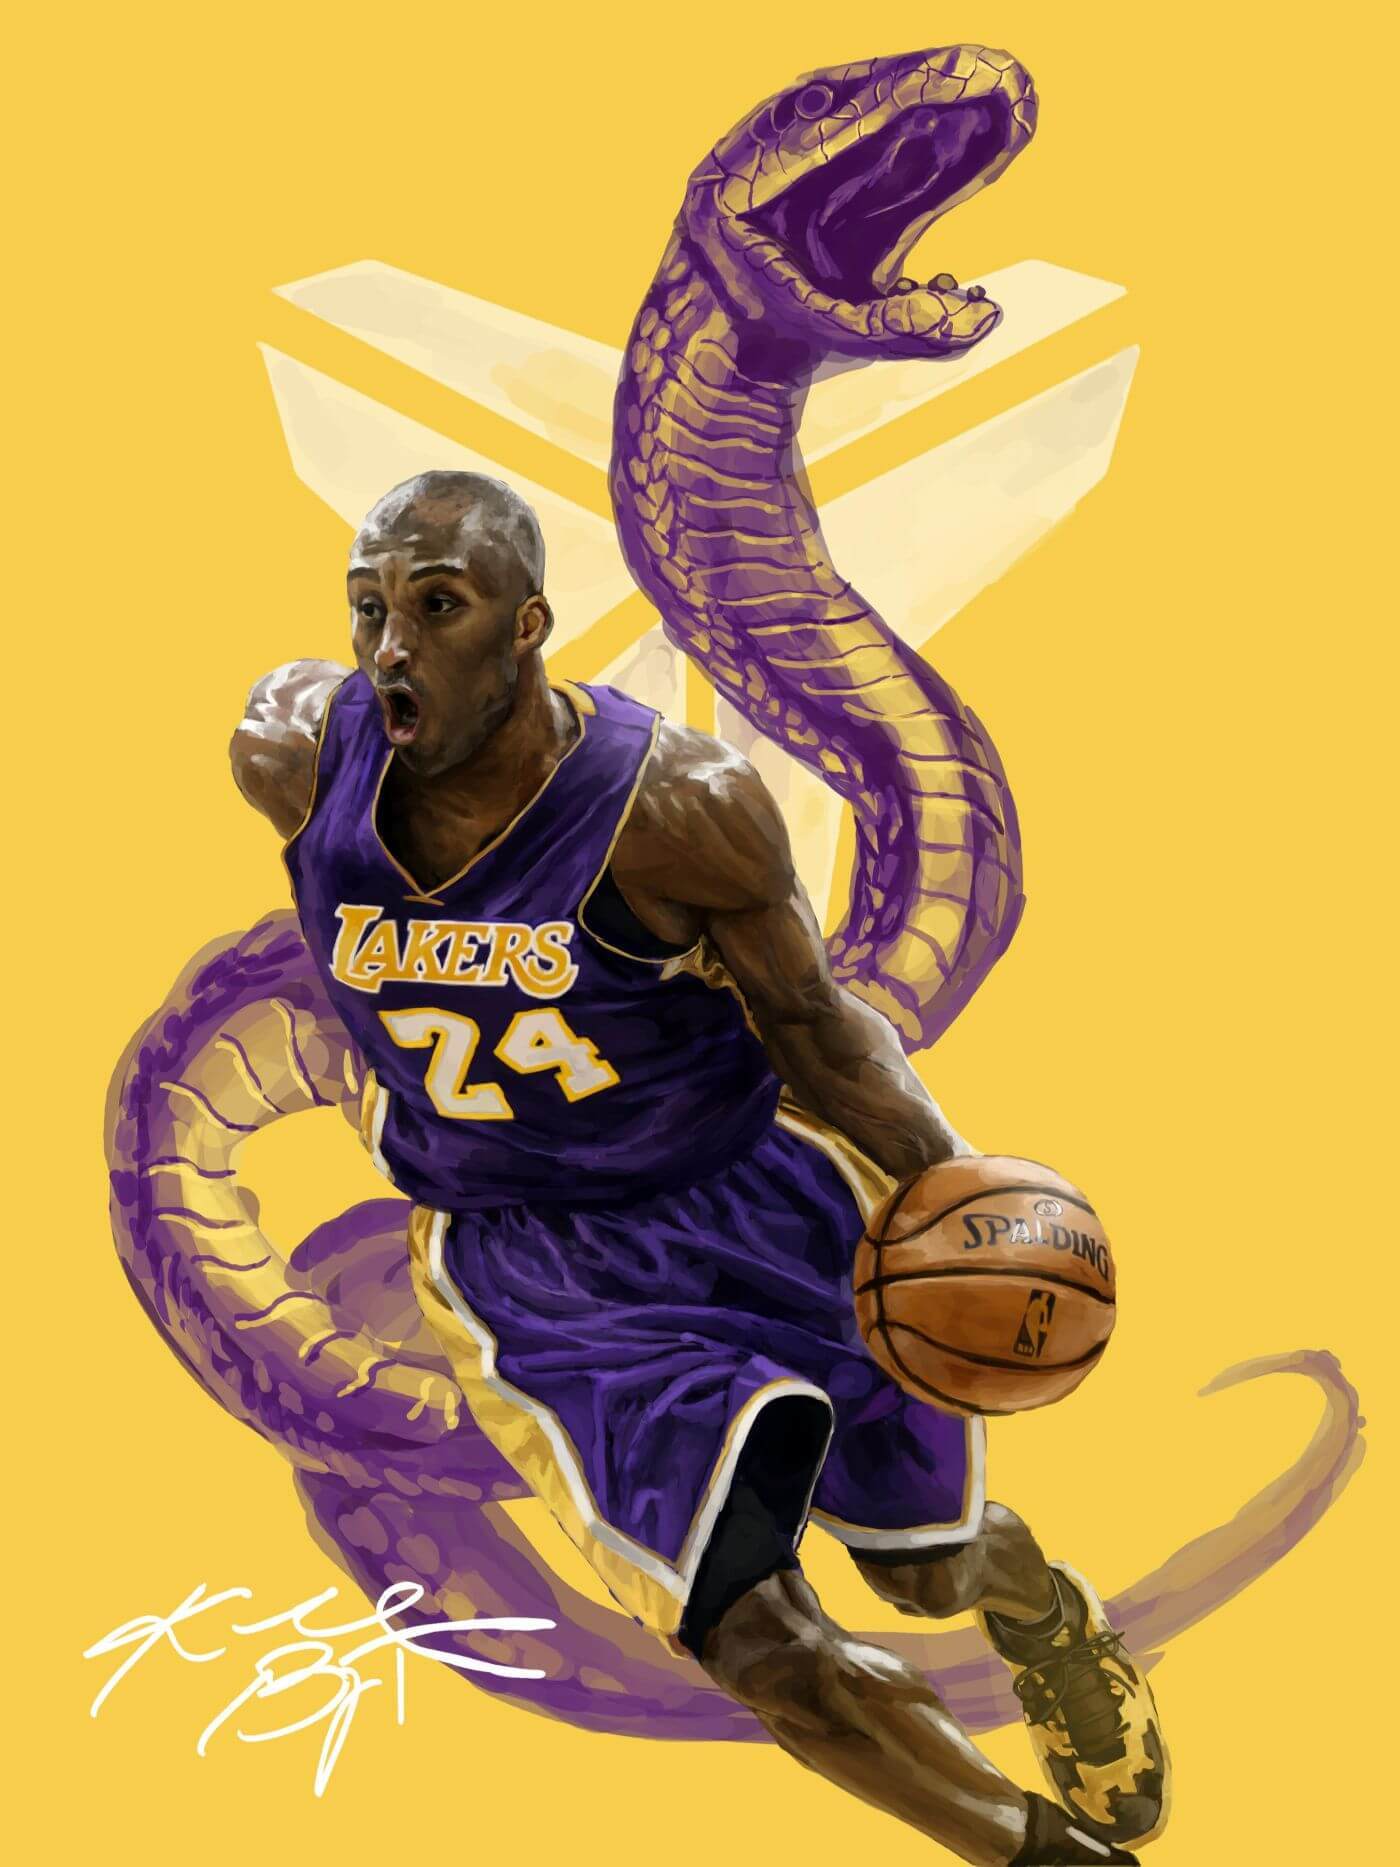 Poster Kobe Byant Basketball Nba Art Lakers Jersey